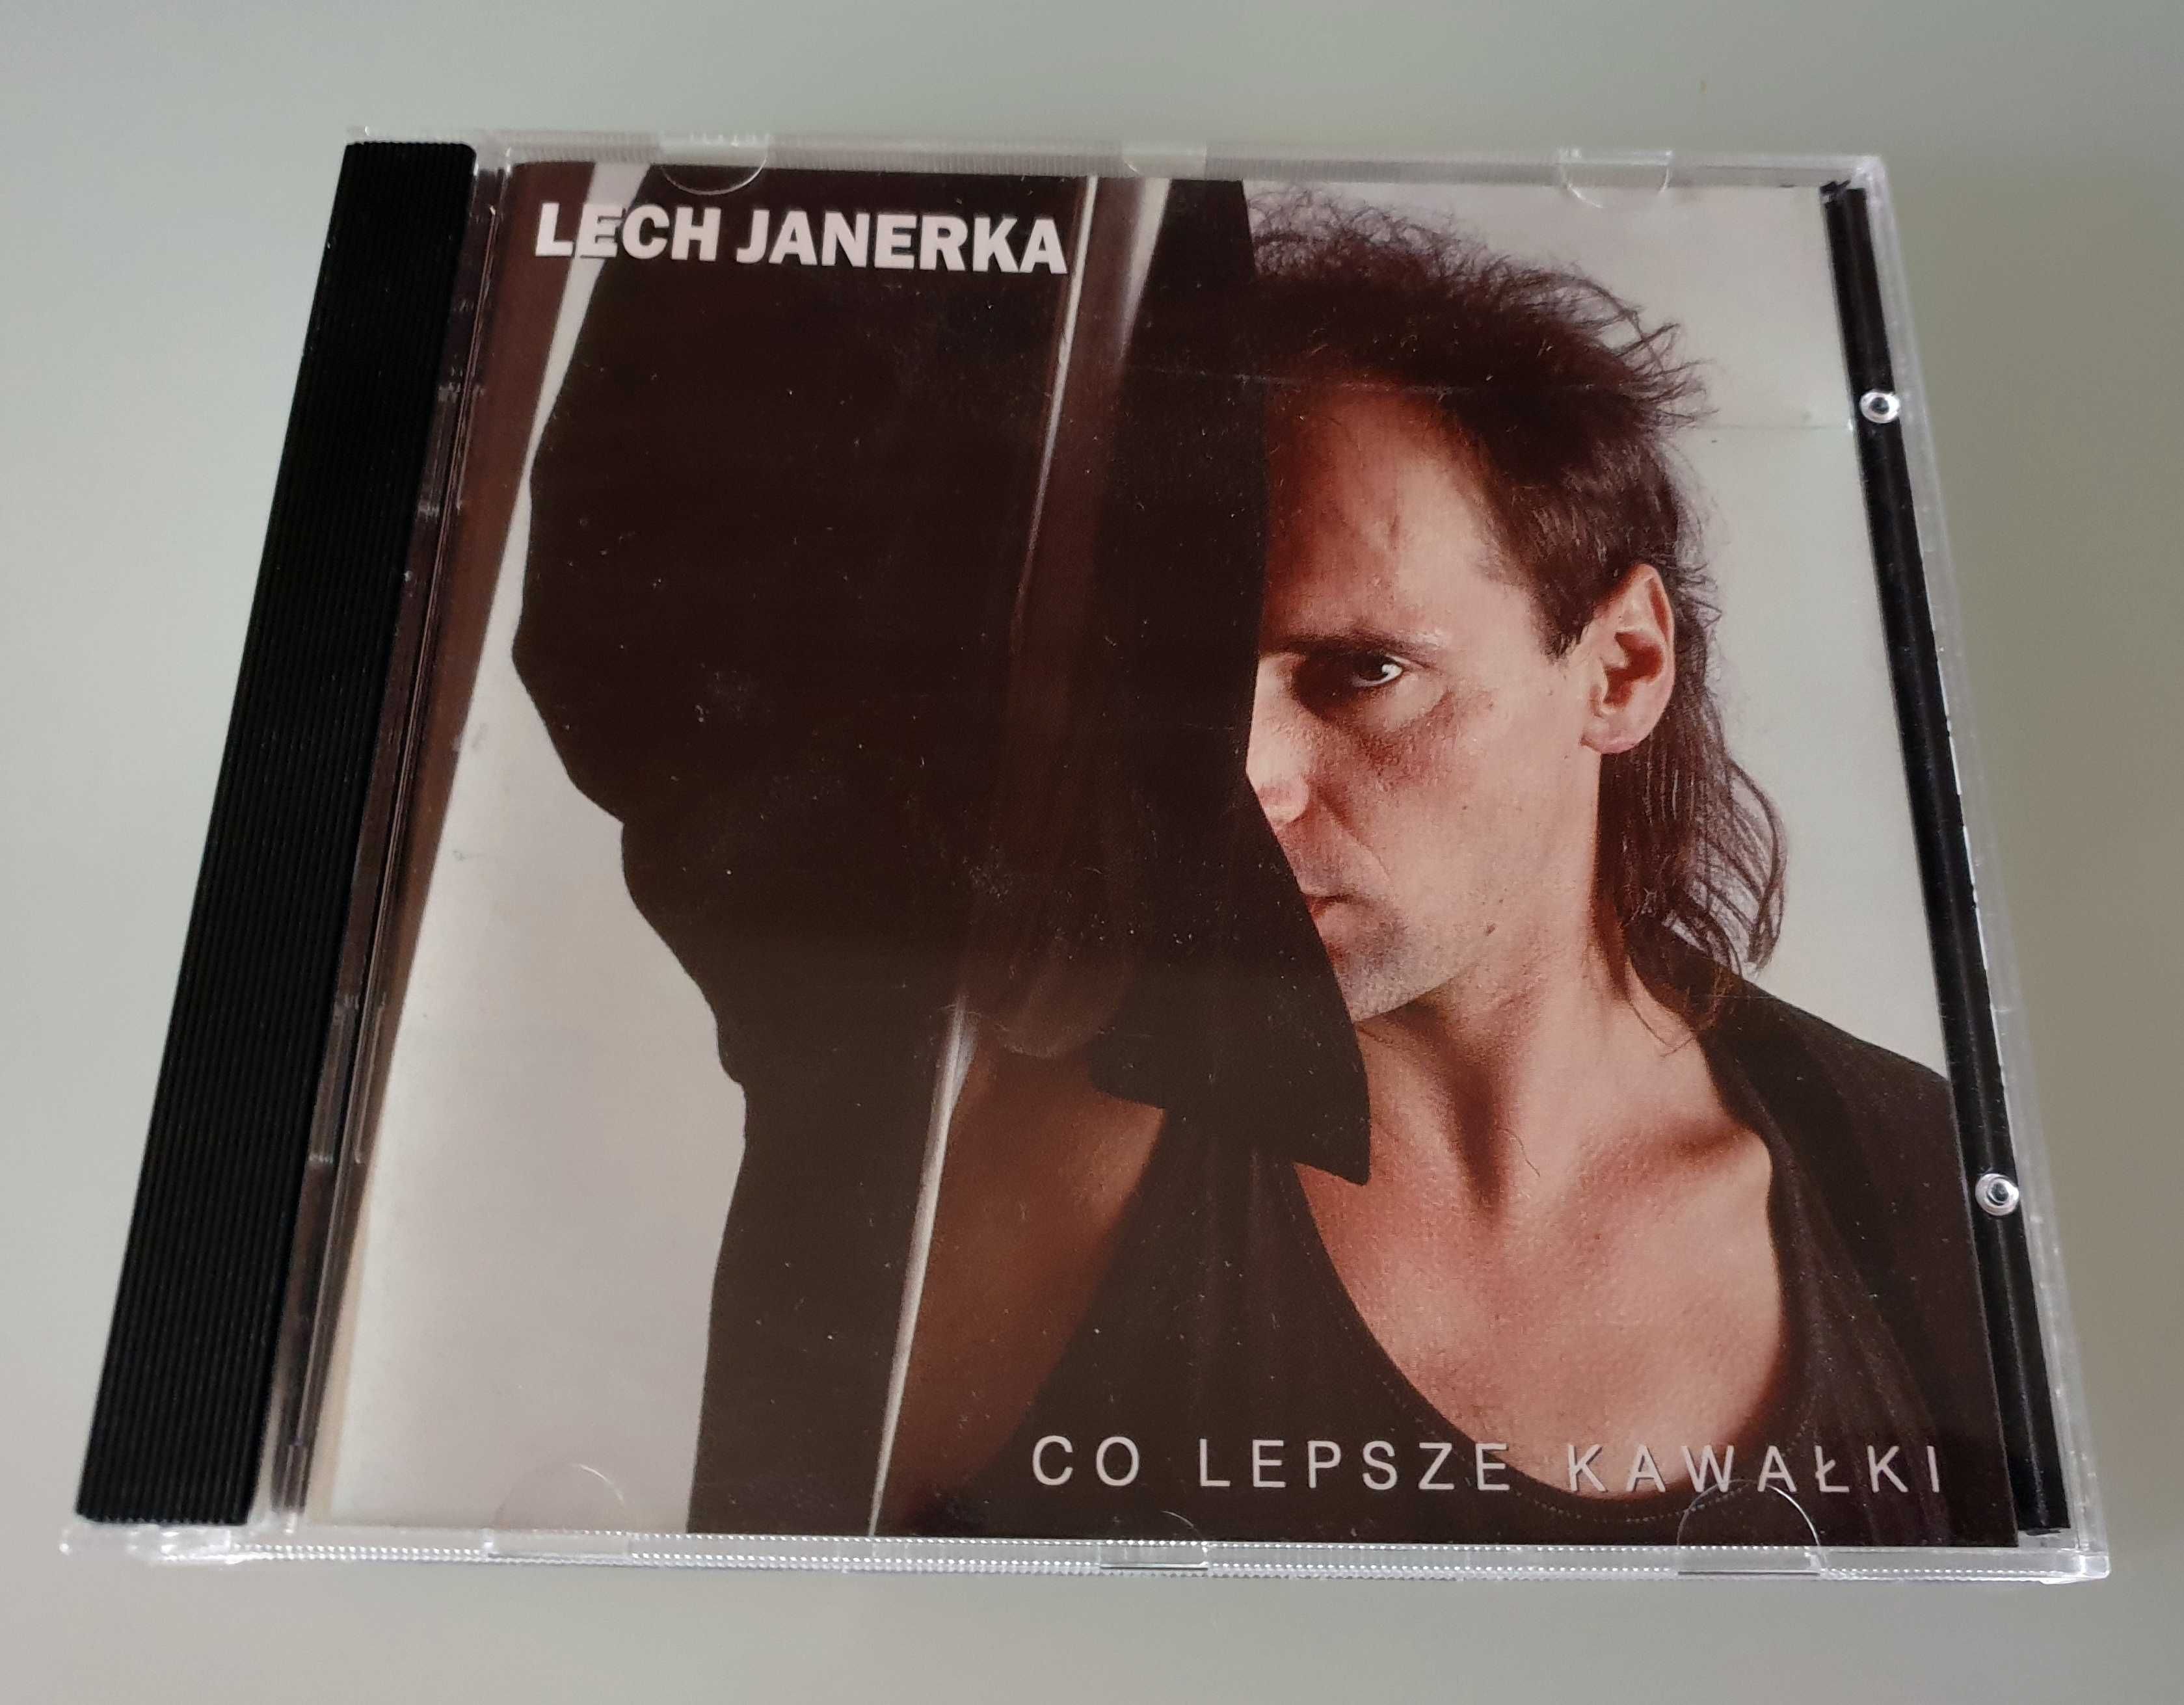 Płyta CD / album Lech Janerka - Co lepsze kawałki (1 edycja)